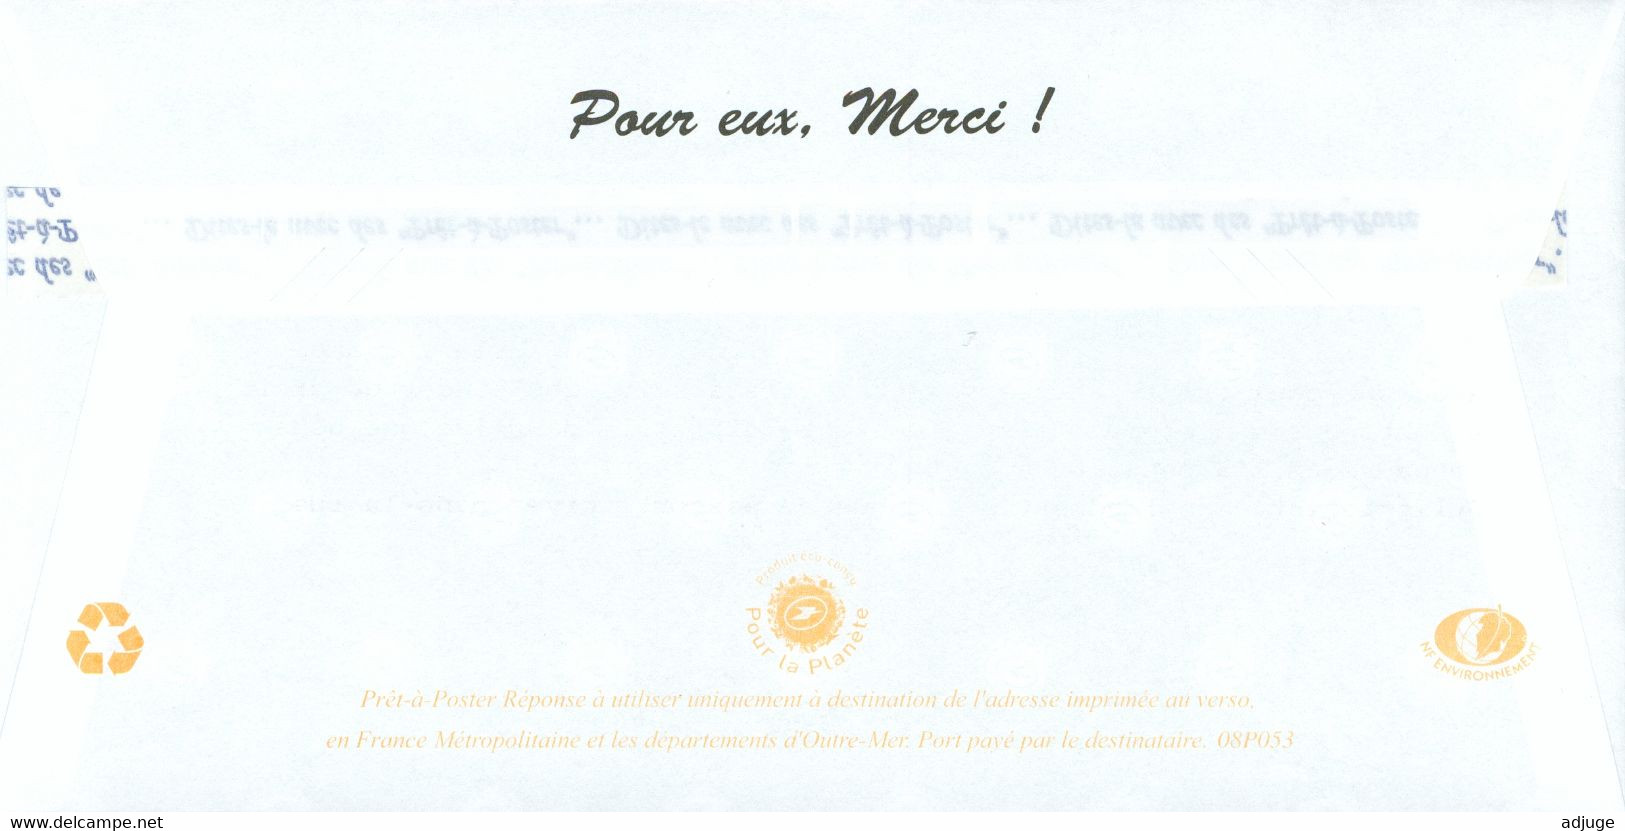 POSTRÉPONSE - Fondation Abbé Pierre -  Réf. 08P053 **SUP*** 2 Scan - Prêts-à-poster:reply